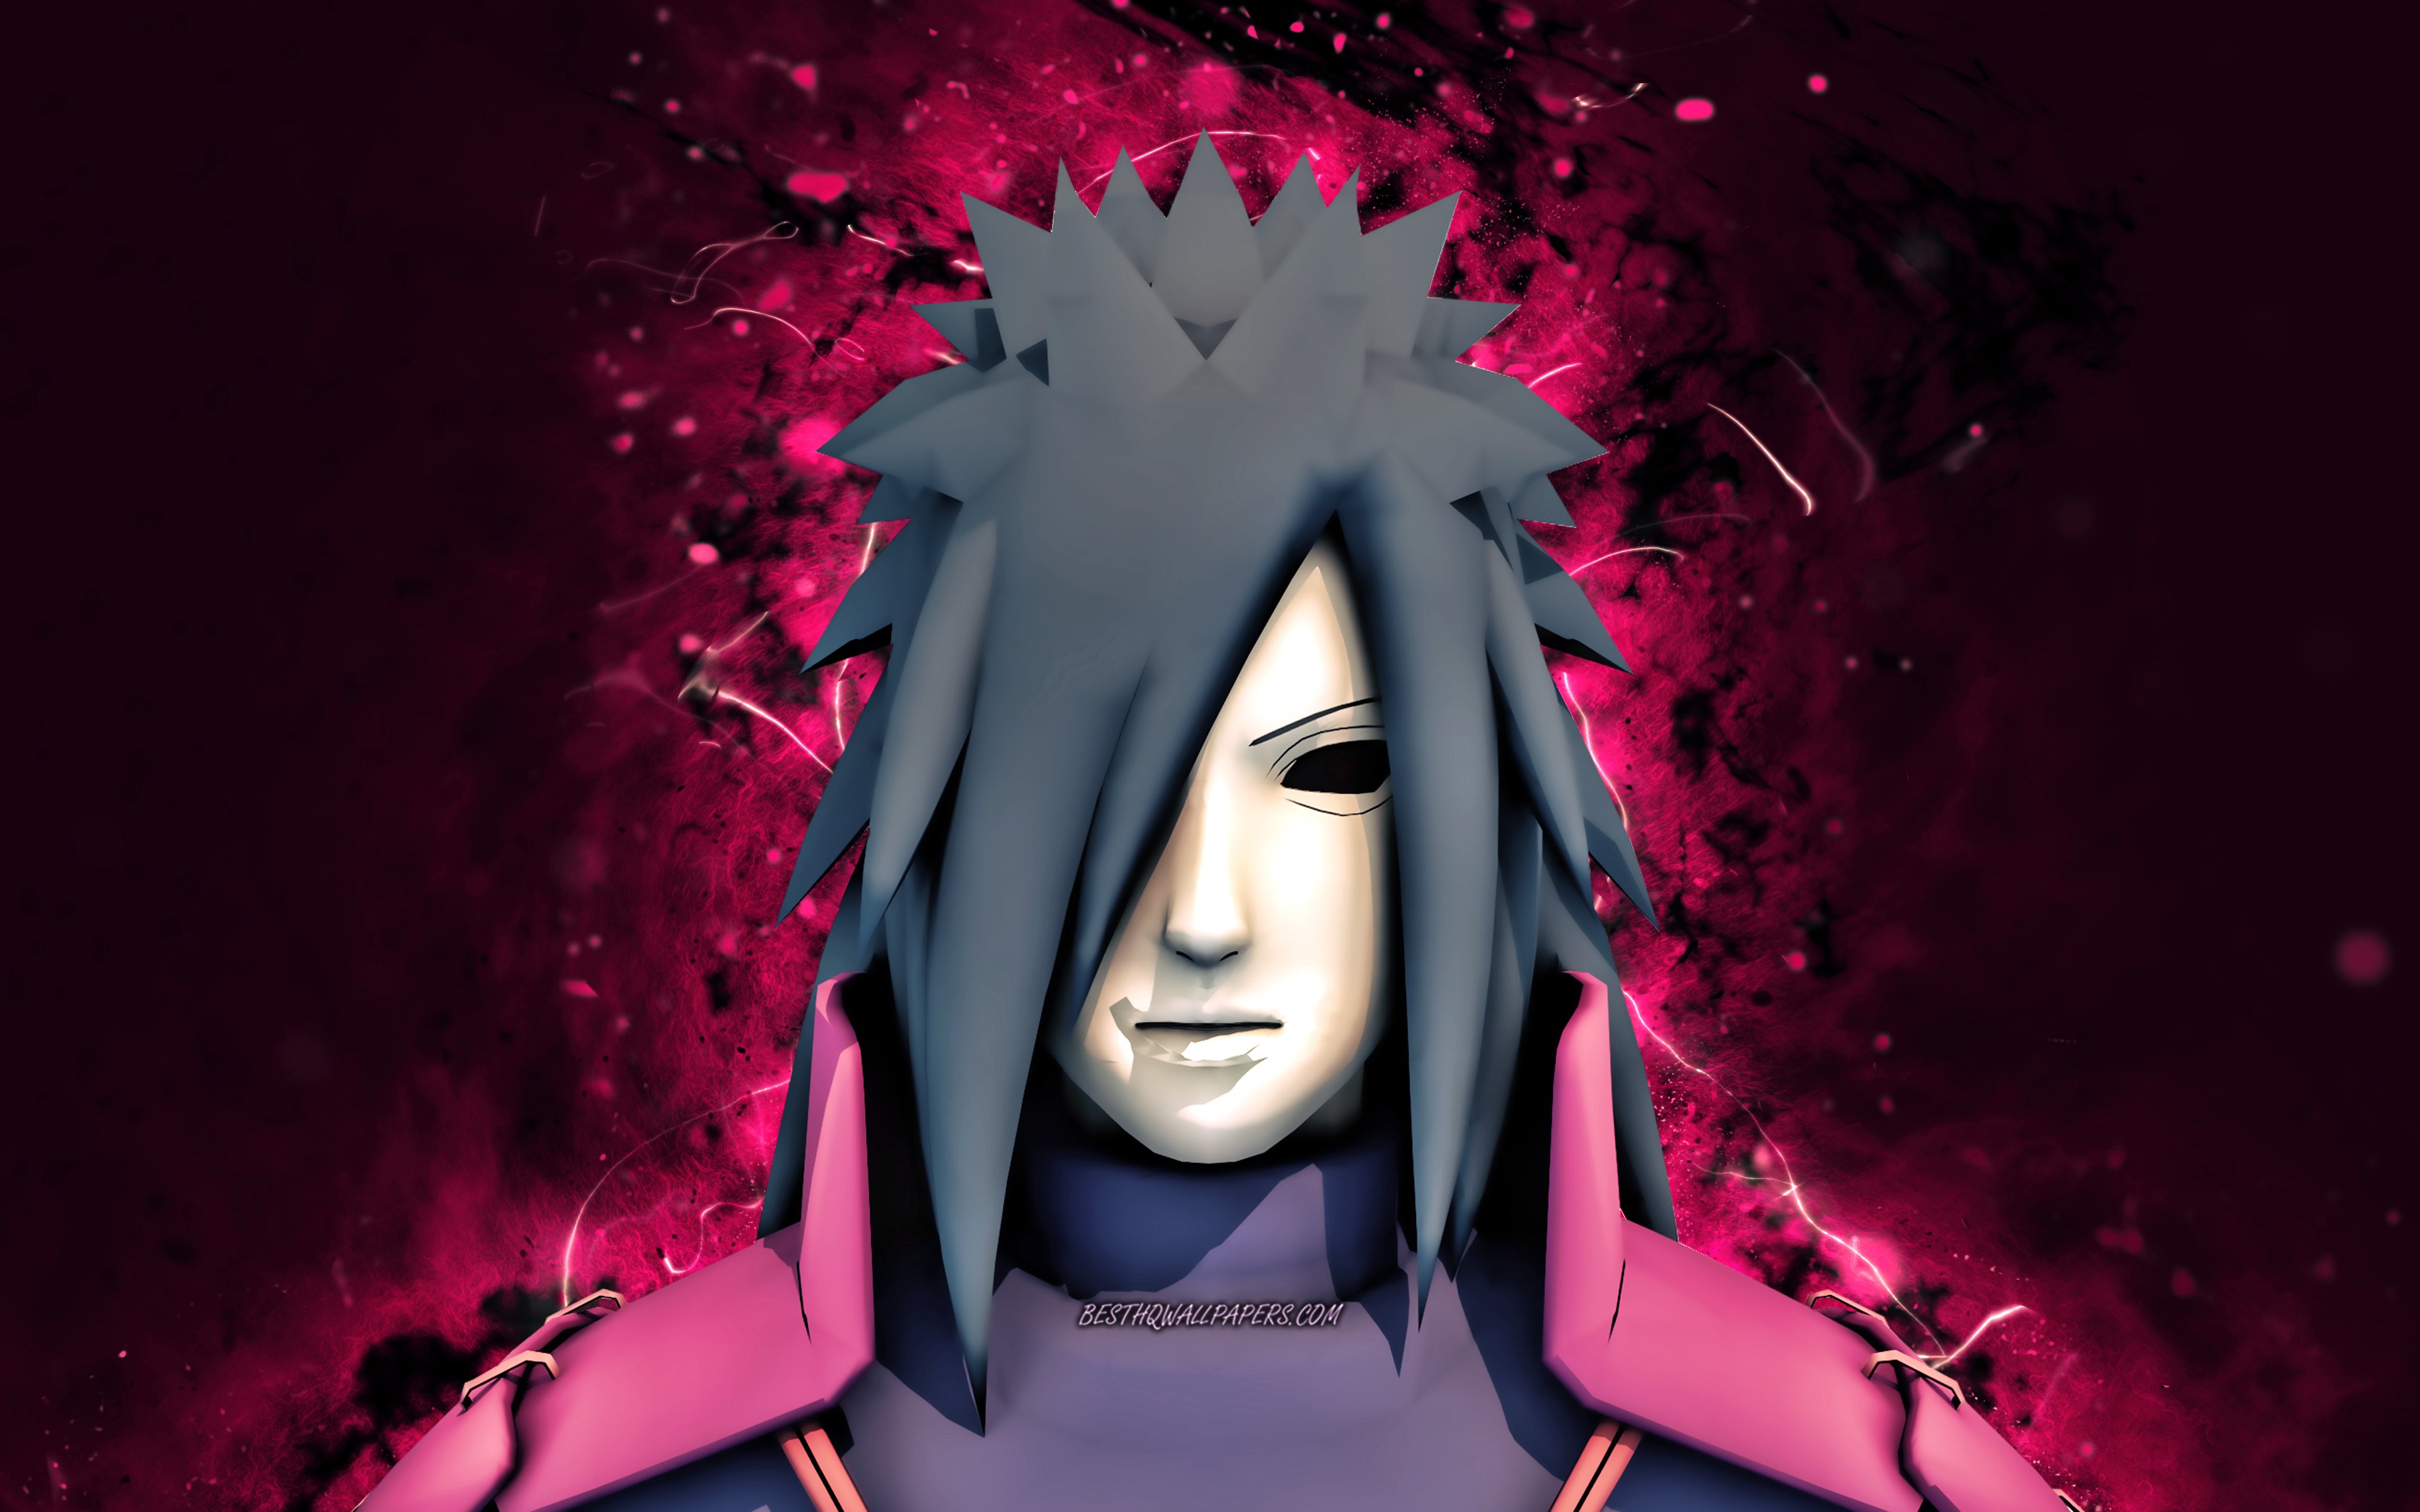 ダウンロード画像 4k うちはマダラ 紫色のネオンライト Naruto ナルト キャラクター 日本の漫画 主人公 Naruto ナルト 侍 うちはマダラナルト 画面の解像度 3840x2400 壁紙デスクトップ上